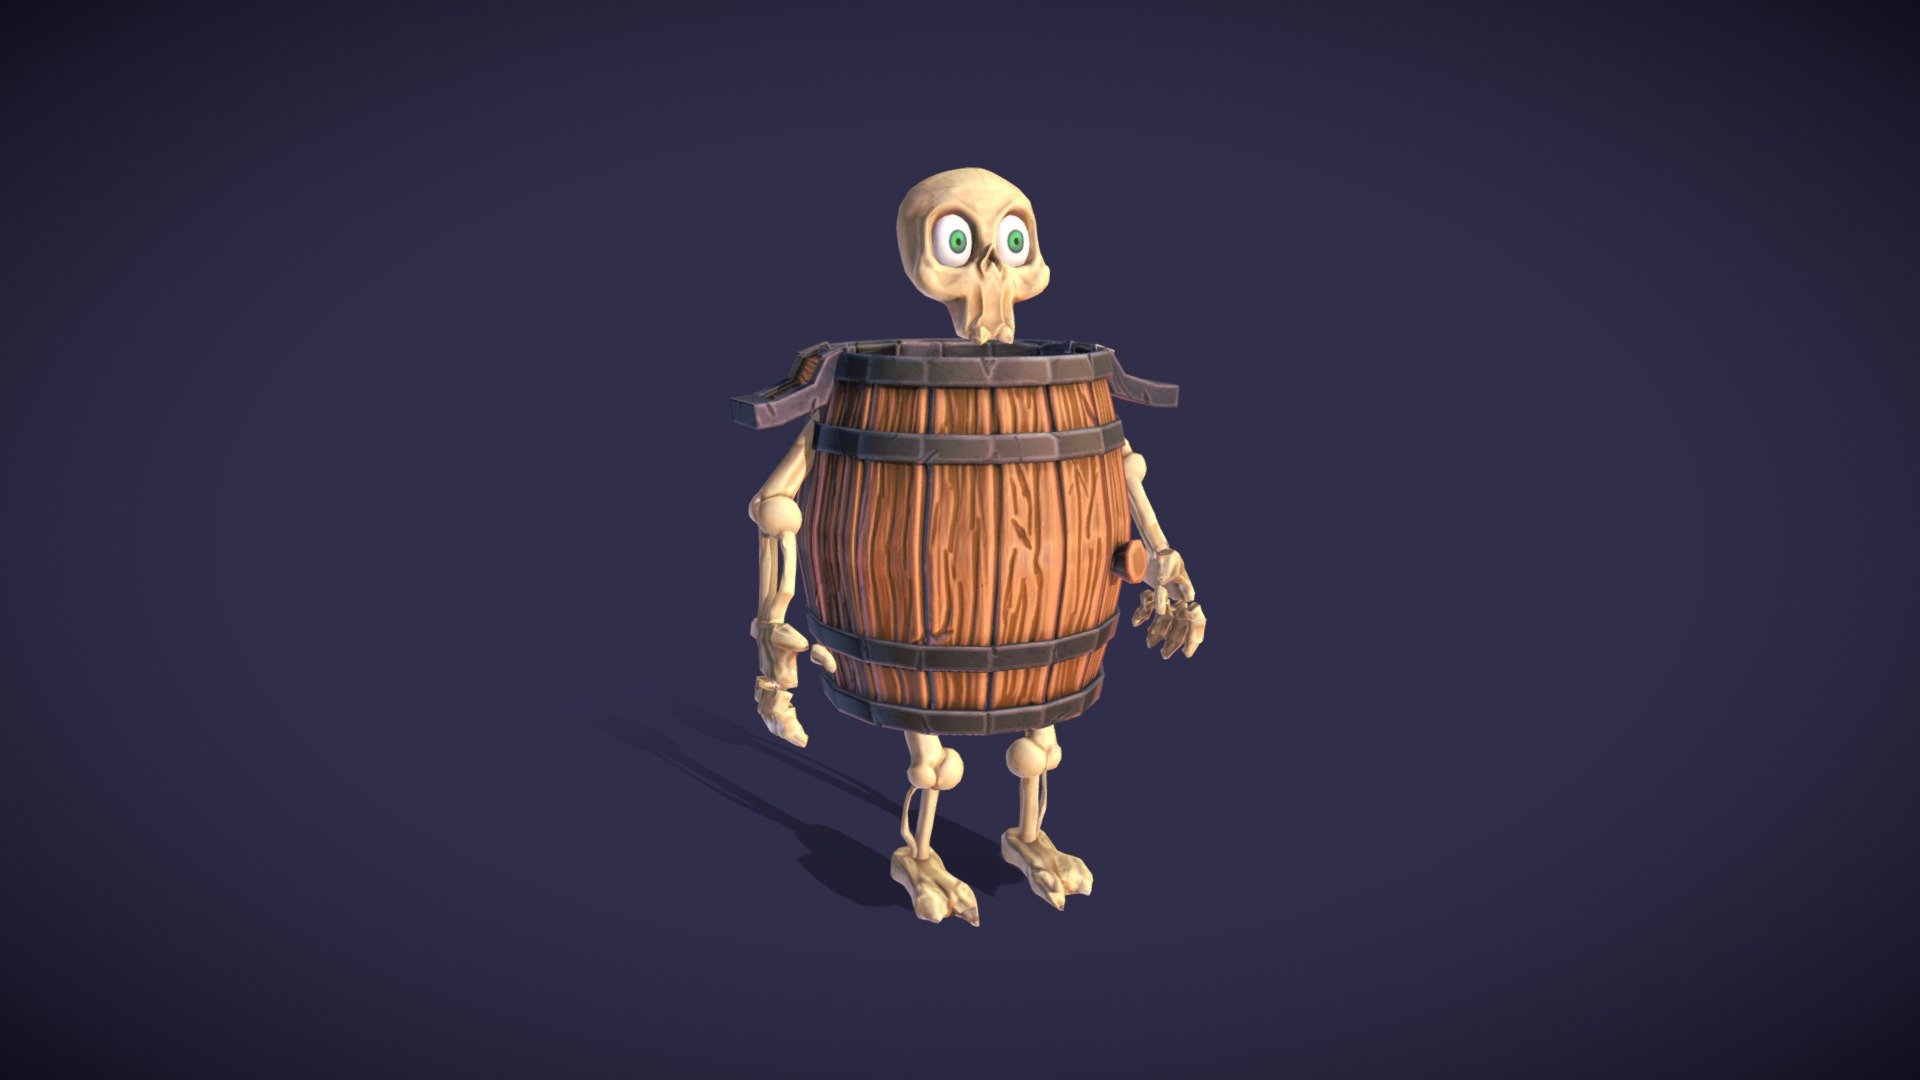 The barrel, Skeleton in a barrel